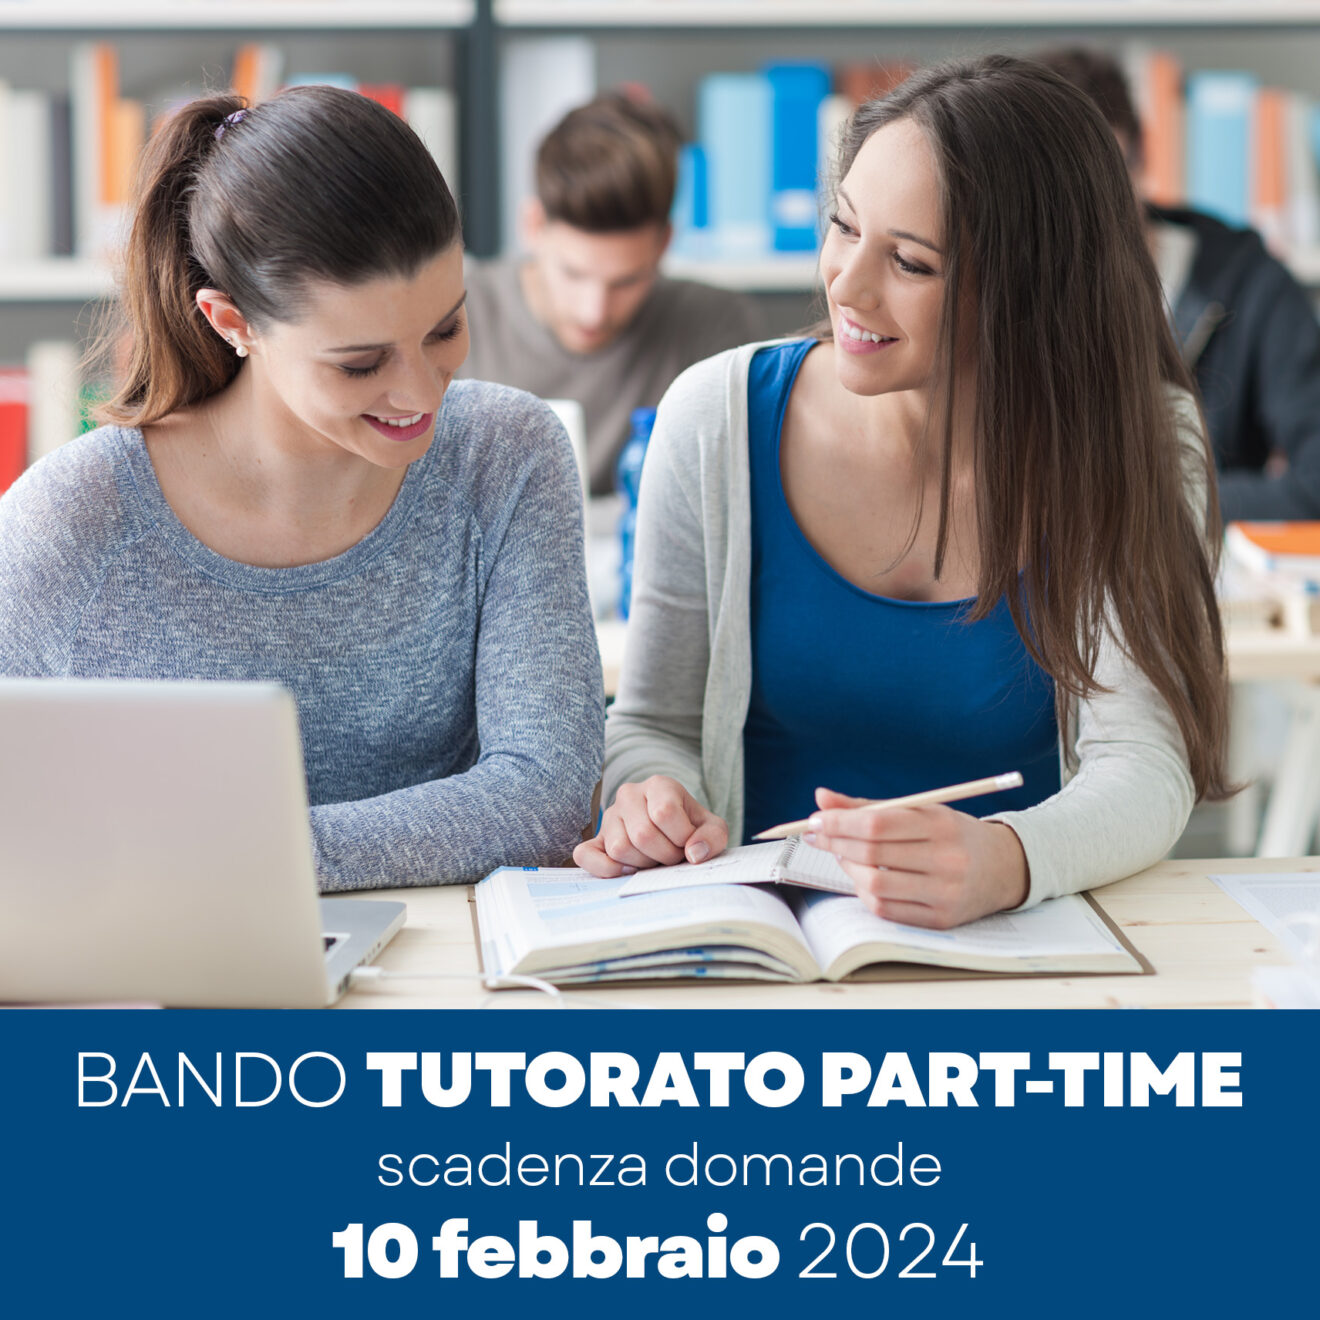 Attività part-time tutorato 200 ore - scadenza domande 10 febbraio